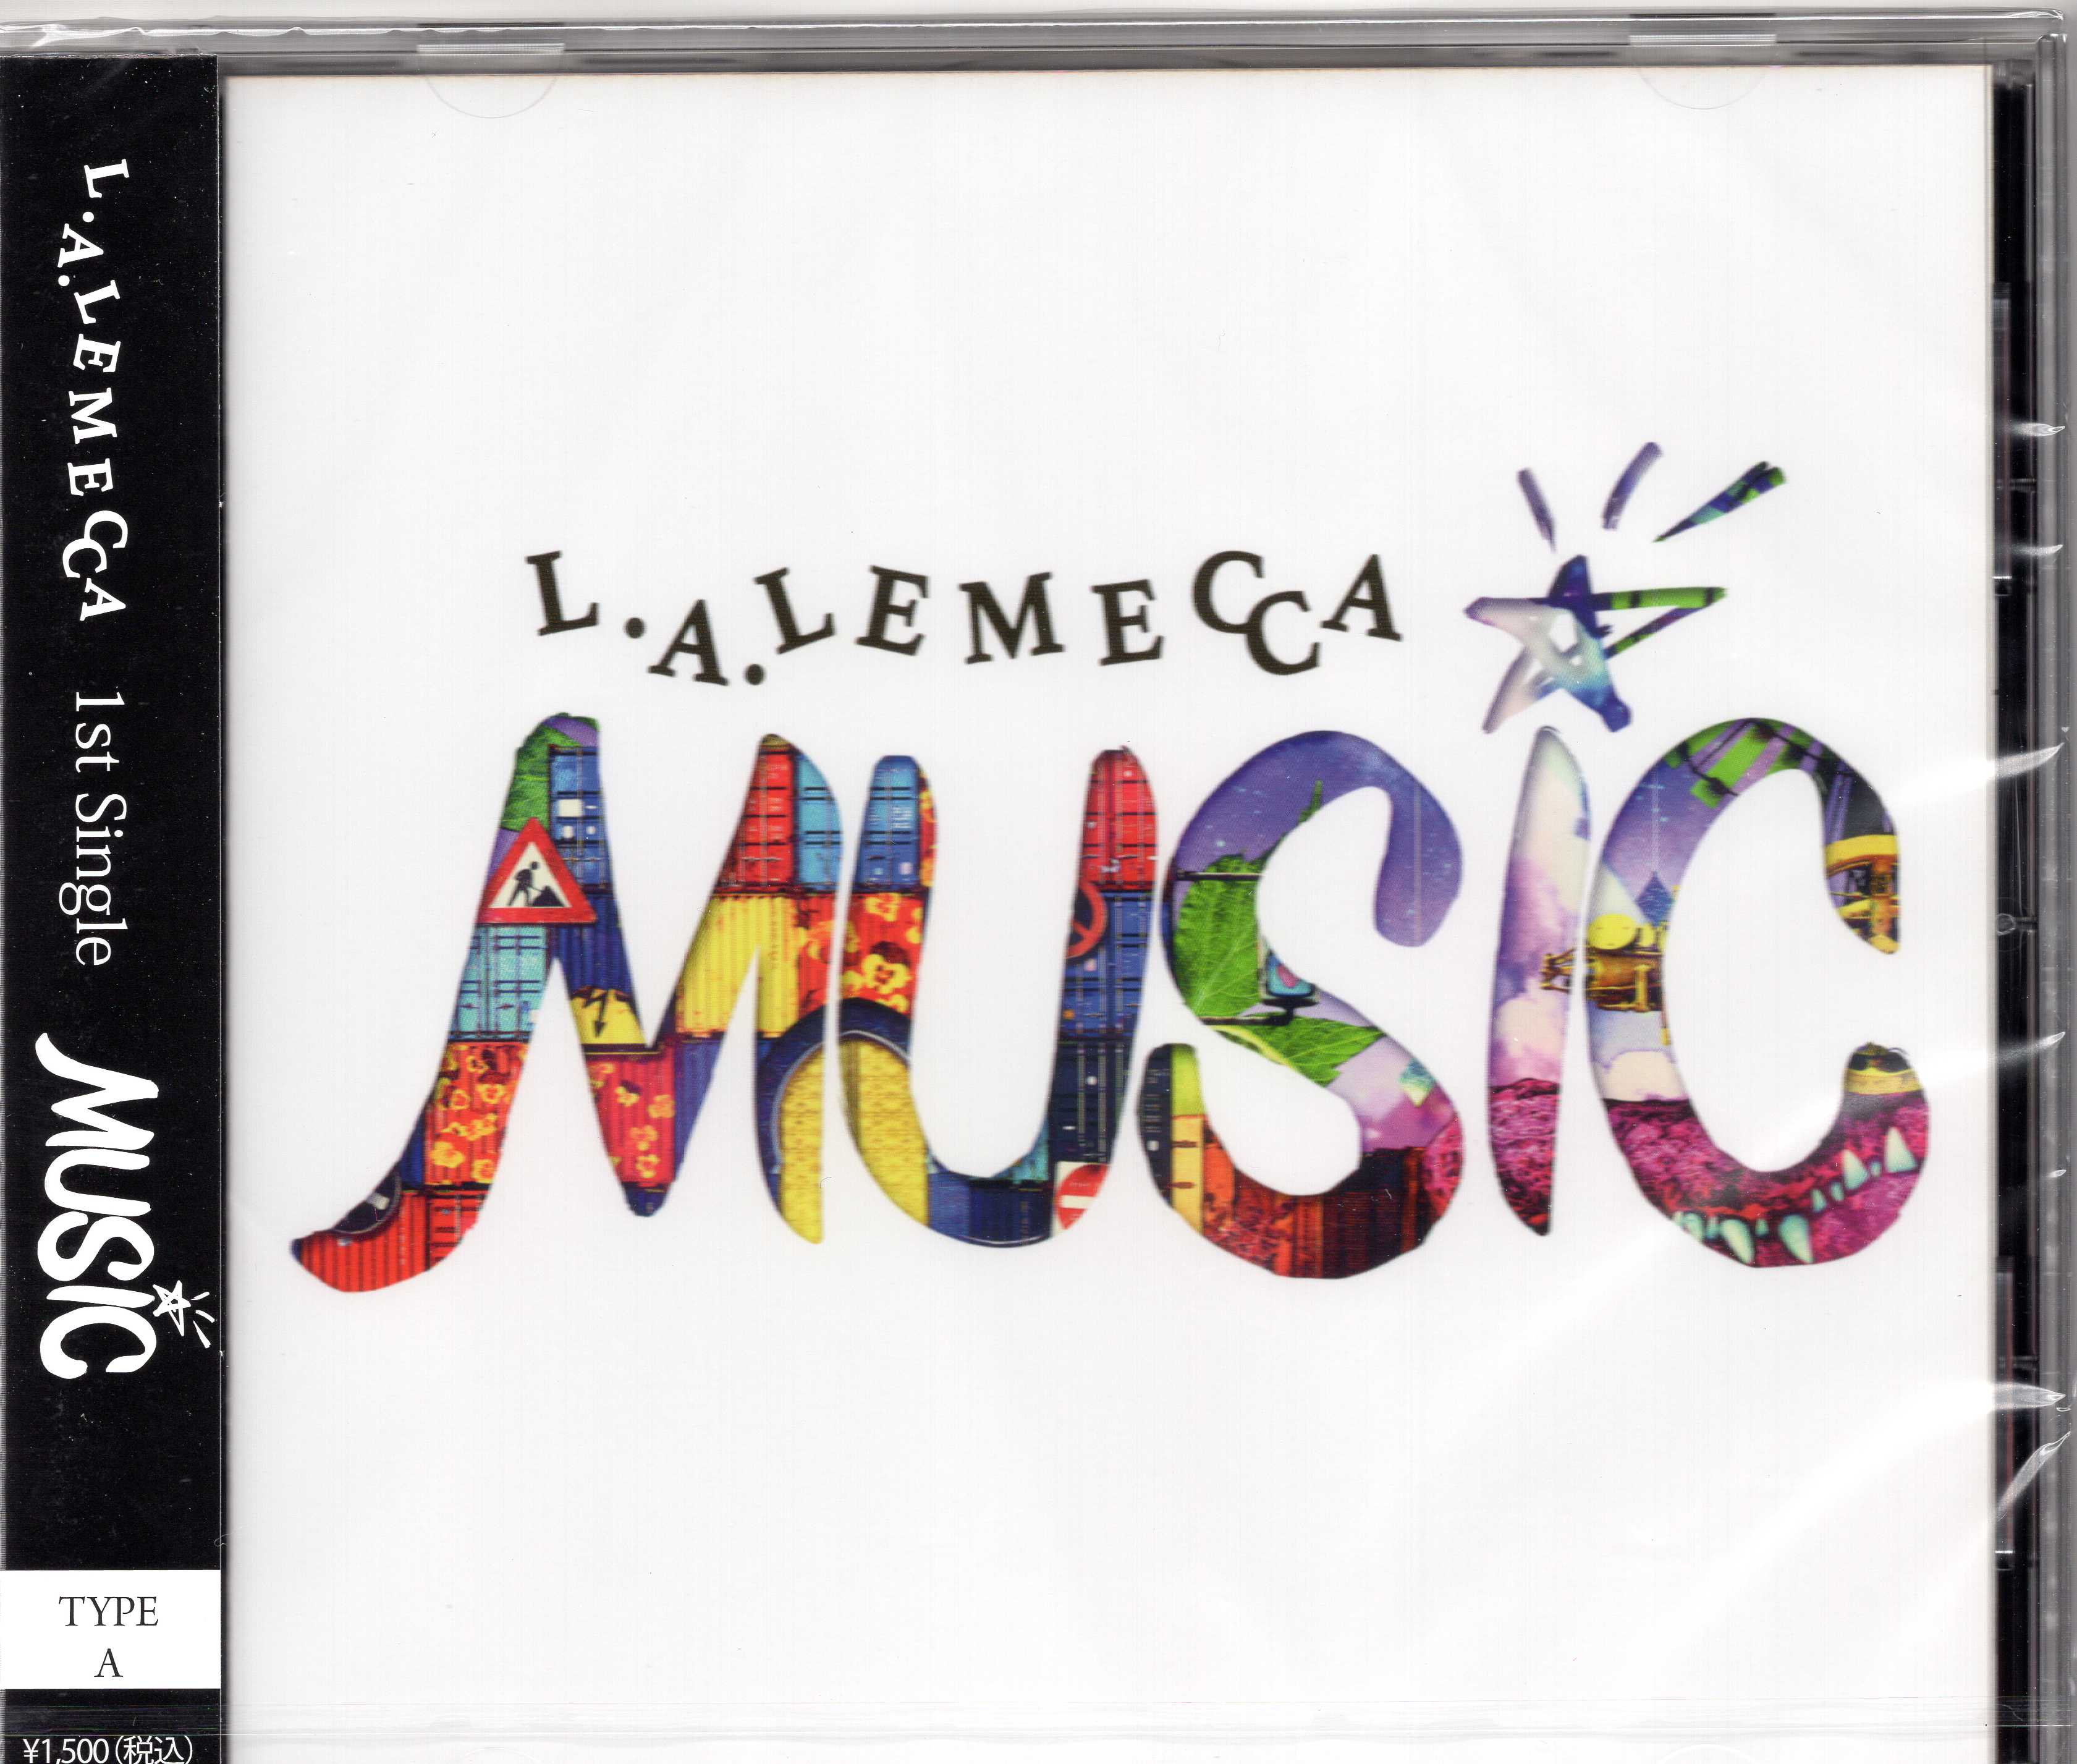 L.A.LEMECCA ( エルエーレメッカ )  の CD 【A タイプ】MUSIC